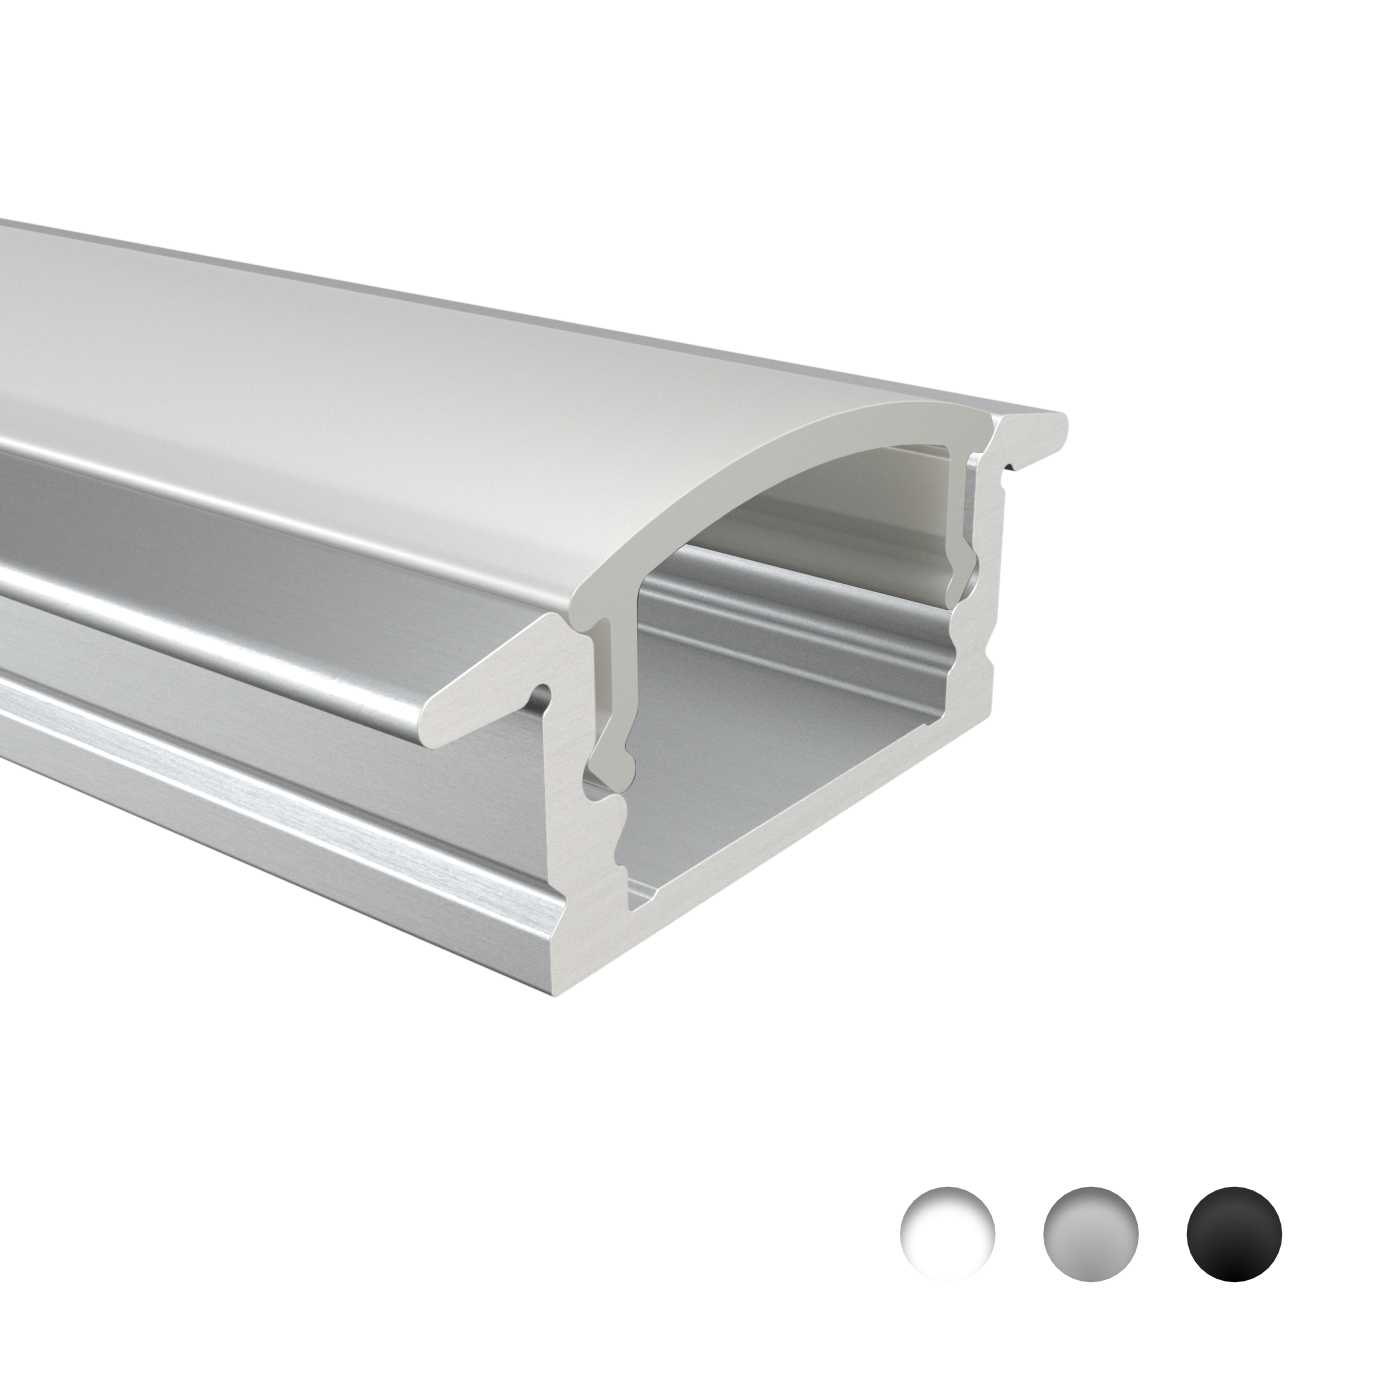 LED Alu Profile Einbauprofil / Flügel-Profil eloxiert für 16mm LED-Streifen  mit einklickbarer Abdeckung - Ems